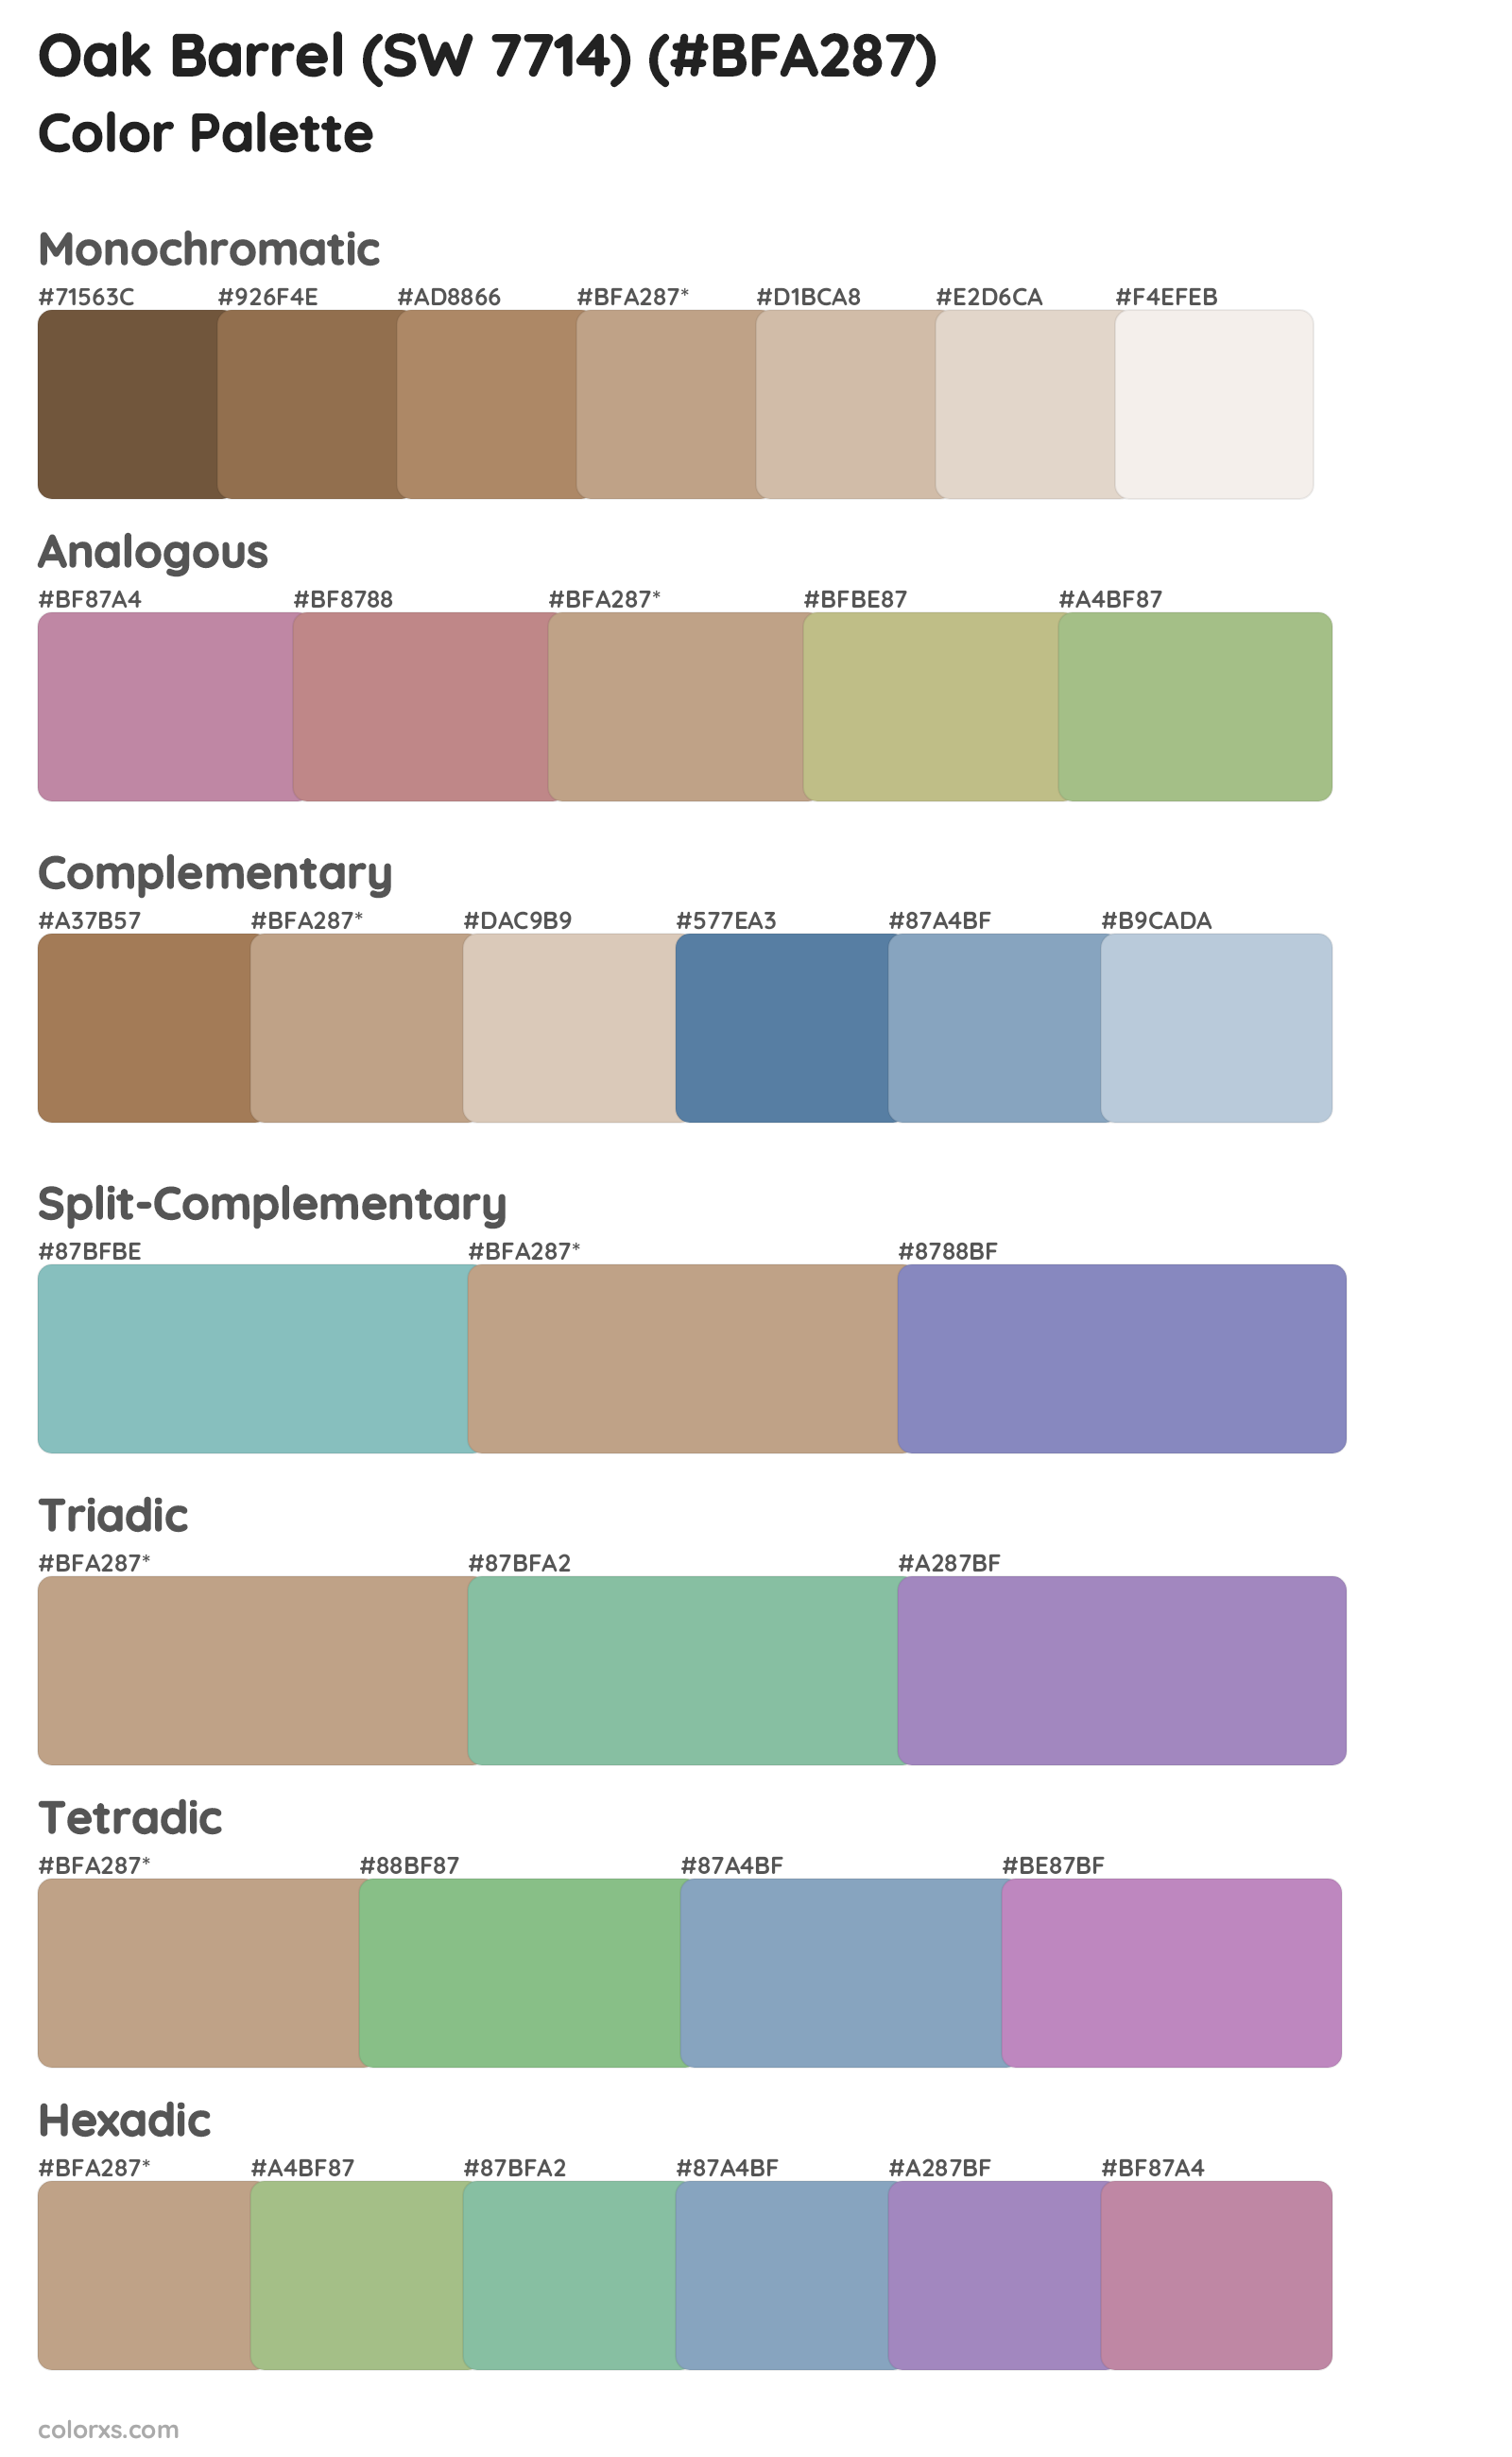 Oak Barrel (SW 7714) Color Scheme Palettes